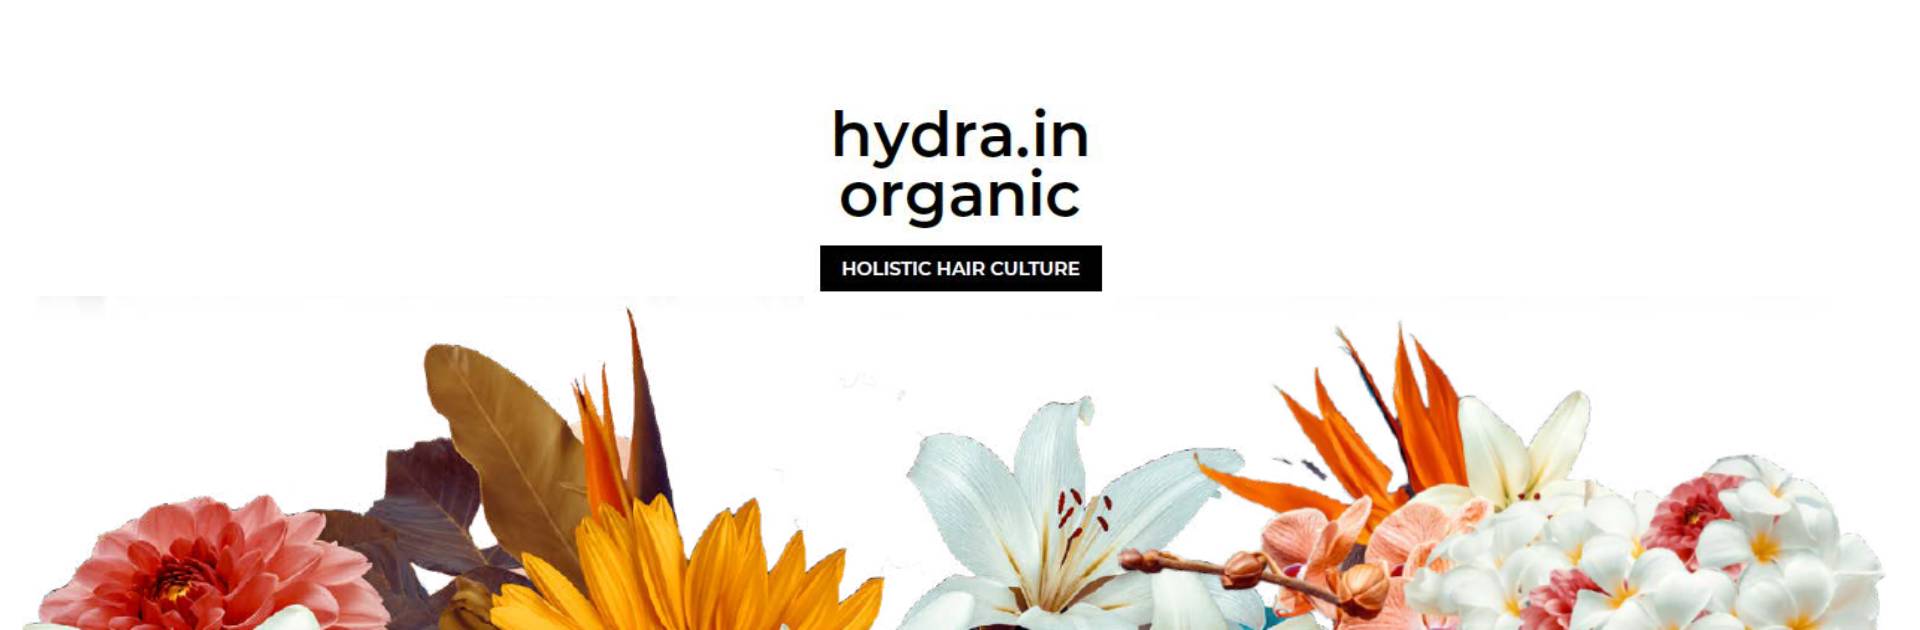 hidratación y nutrición para el cabello con Hydra.In Organic